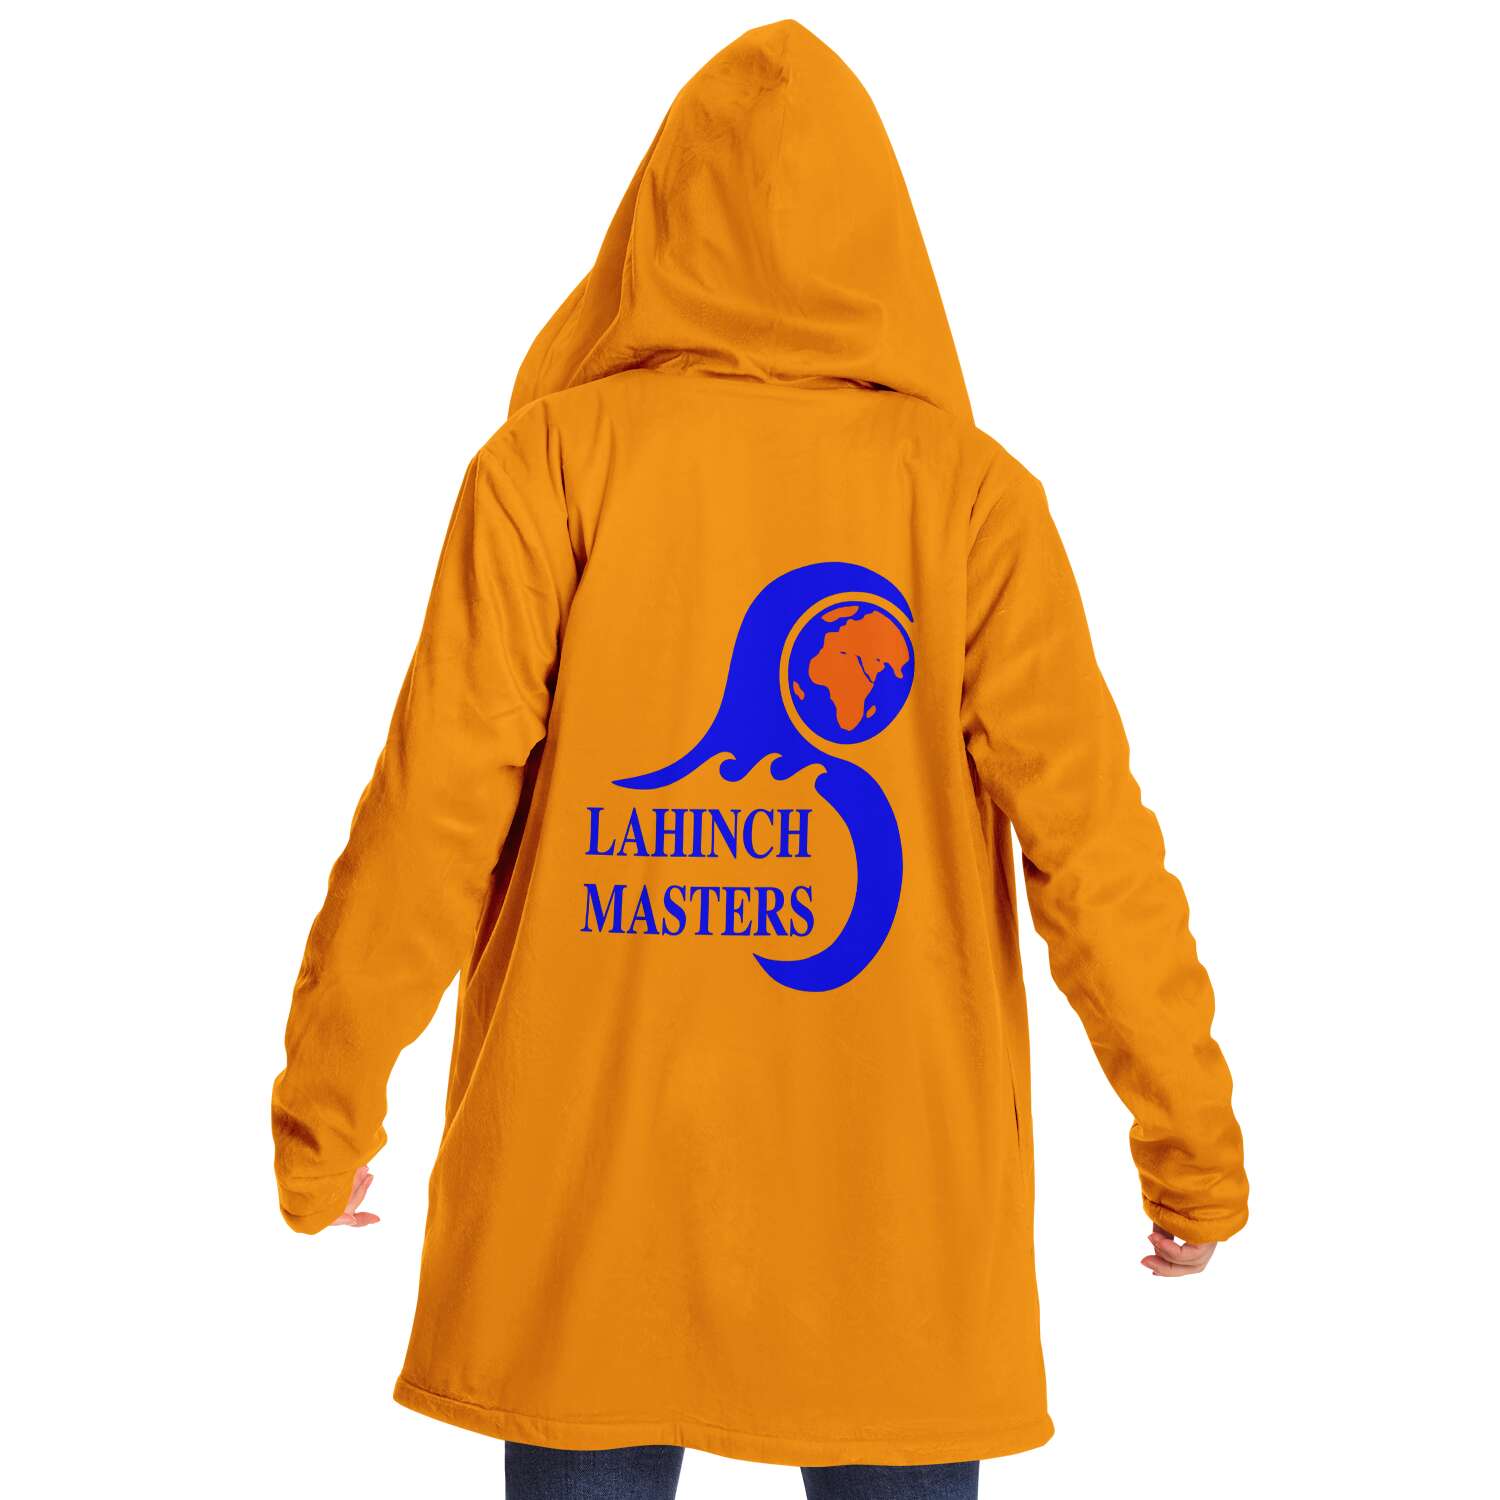 Lahinch Masters microfiber hoodie